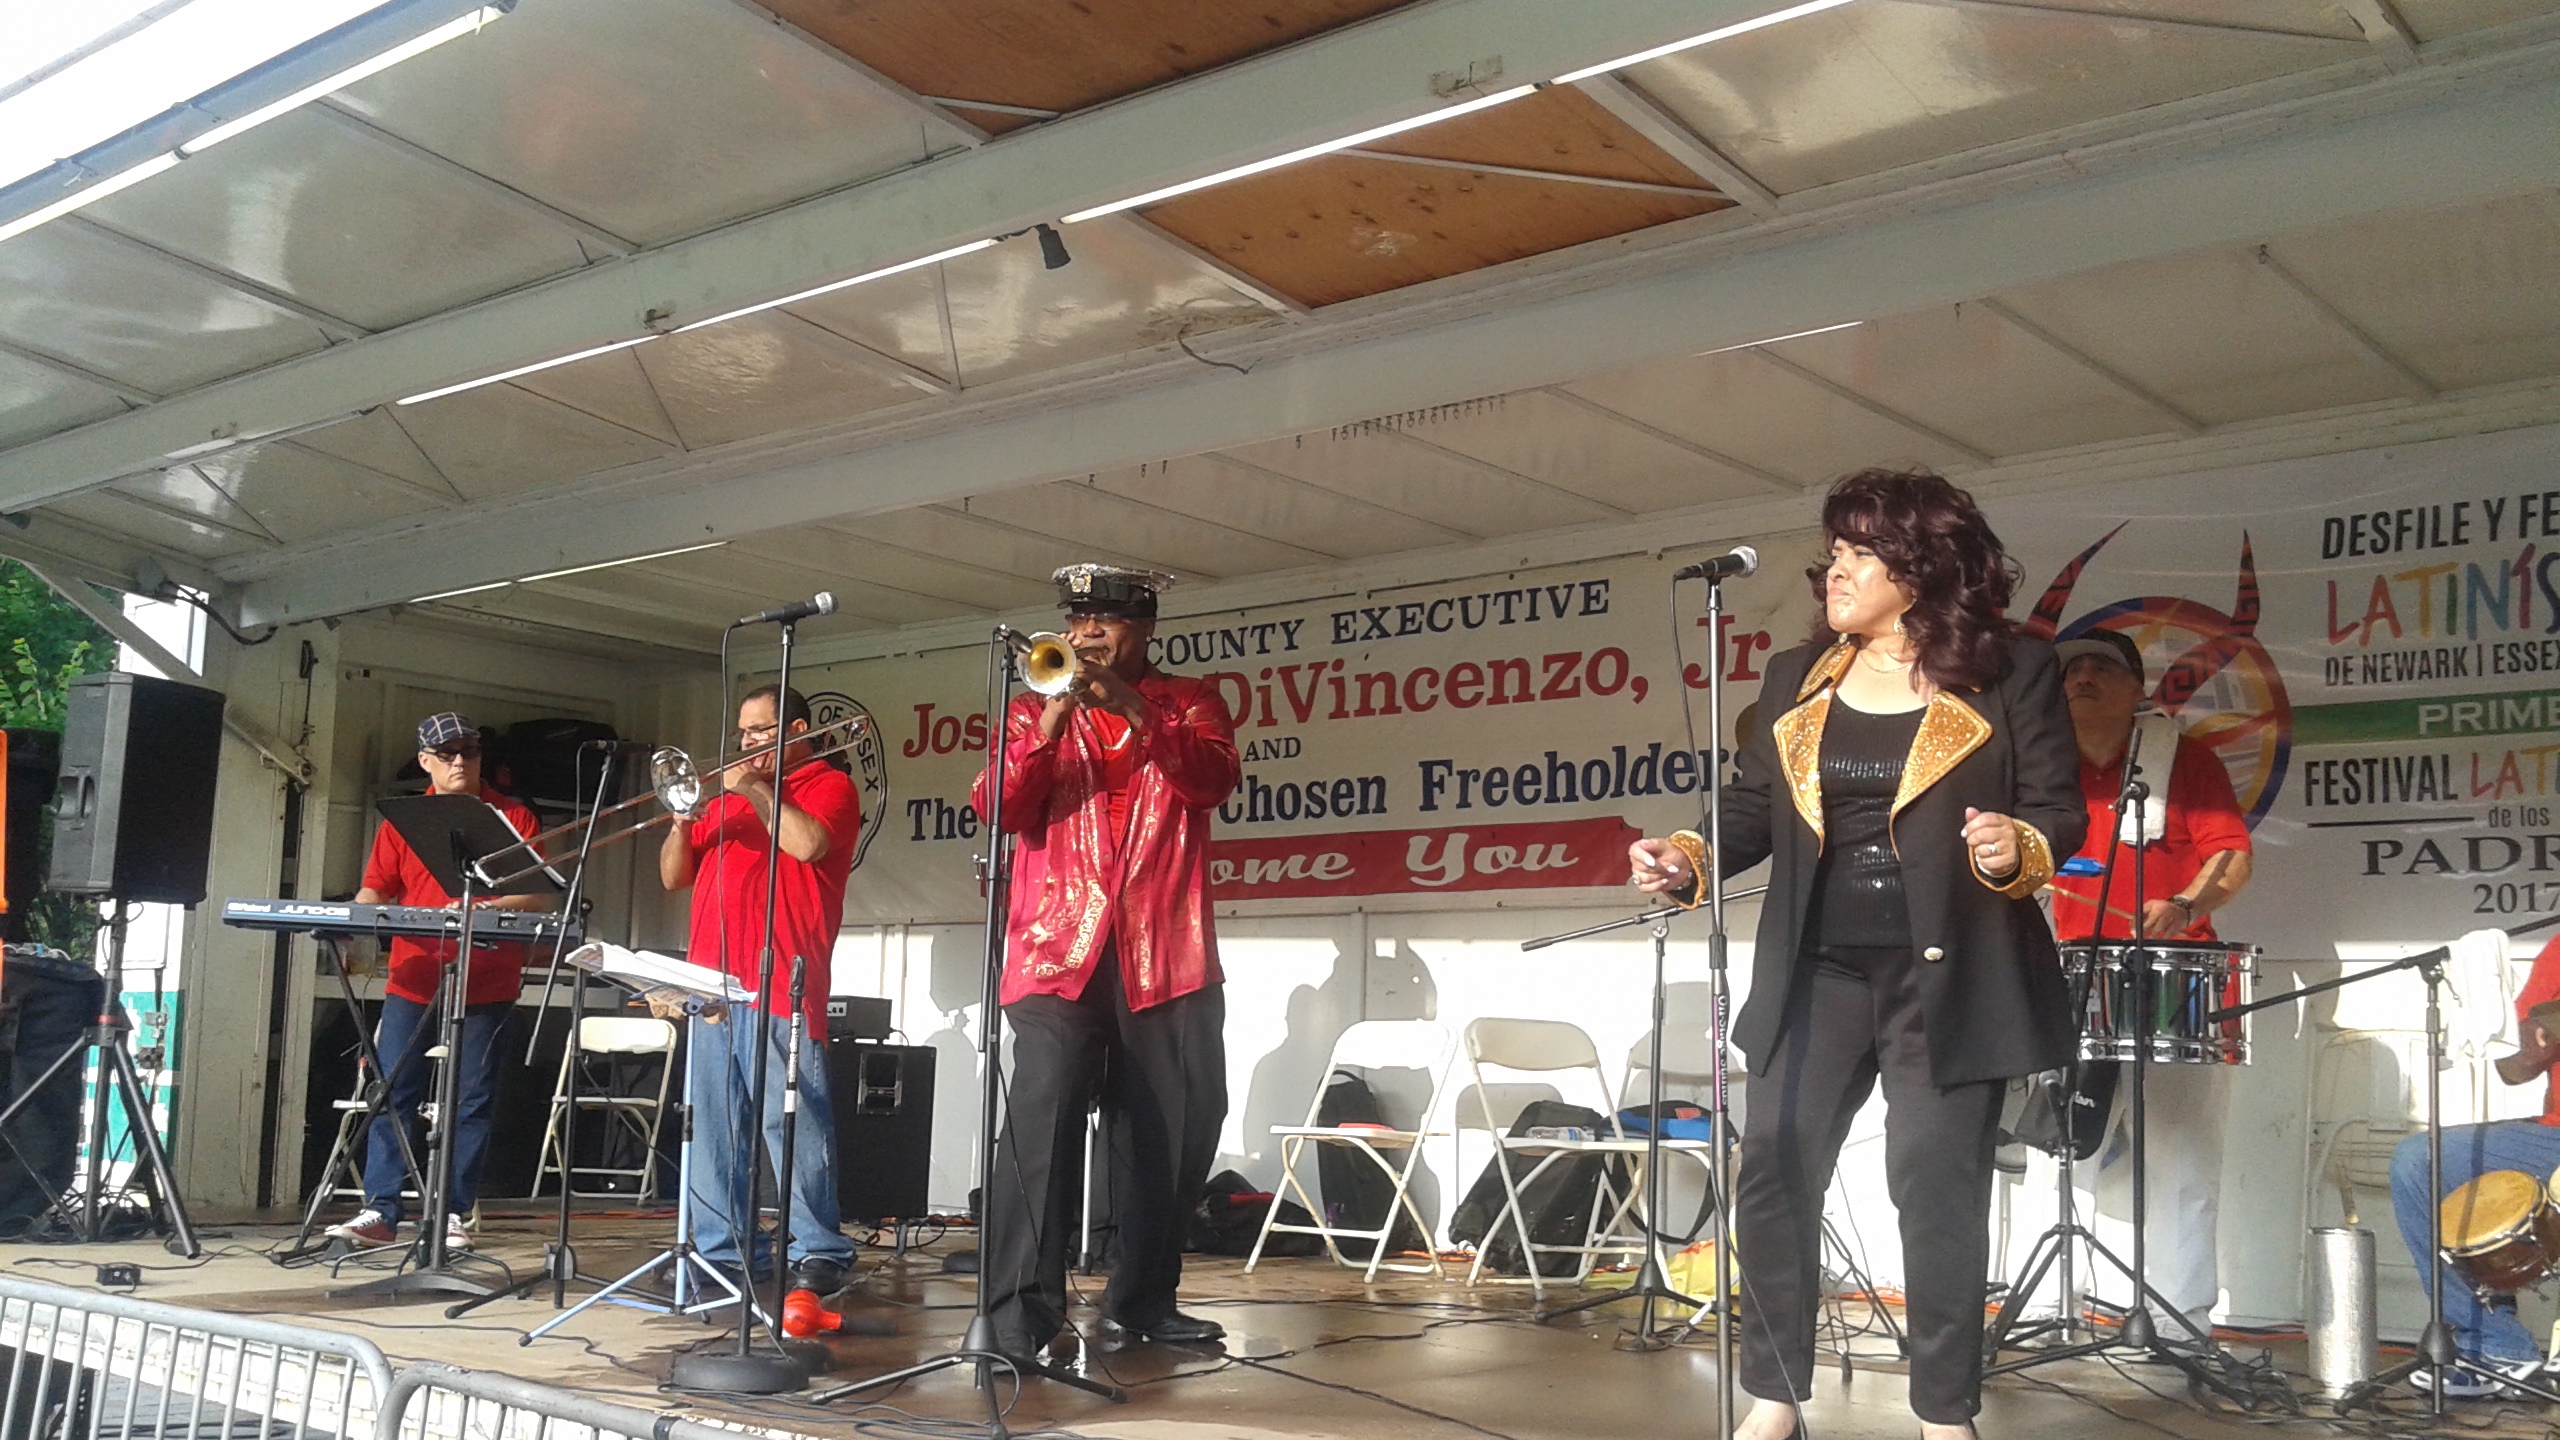  Hispanos celebran Festival Musical Latinísimo en Newark